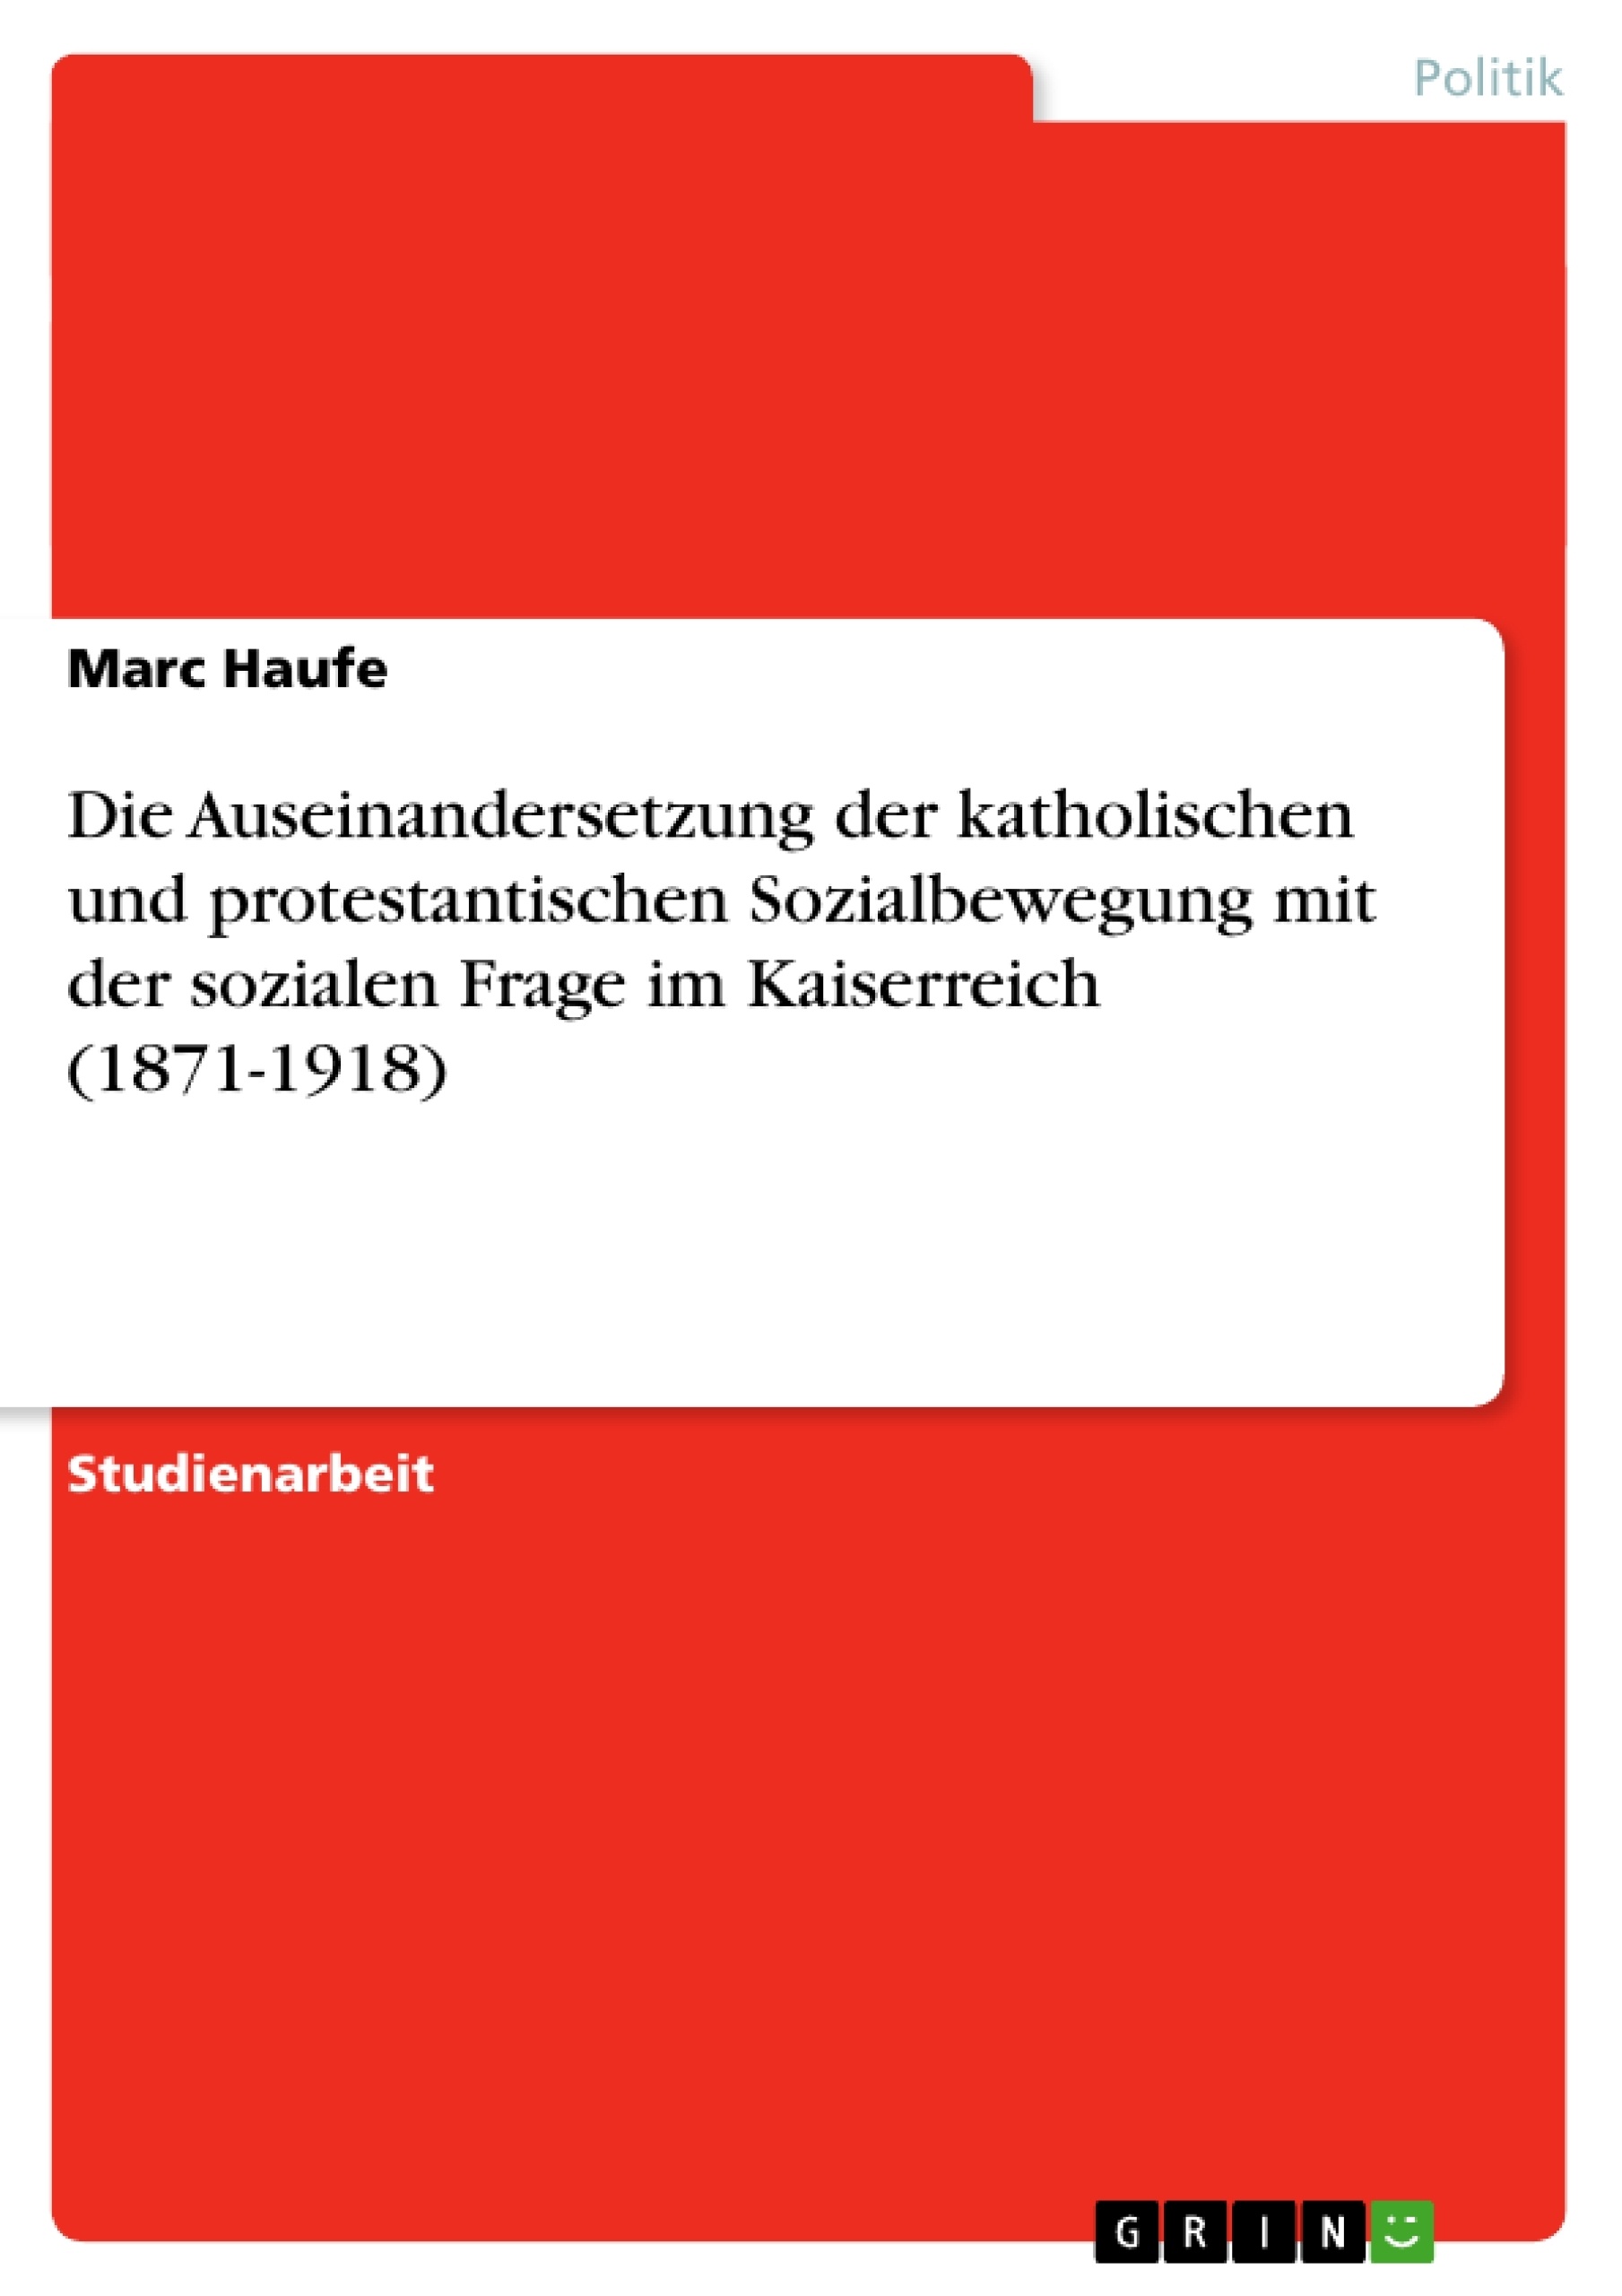 Title: Die Auseinandersetzung der katholischen und protestantischen Sozialbewegung mit der sozialen Frage im Kaiserreich (1871-1918)